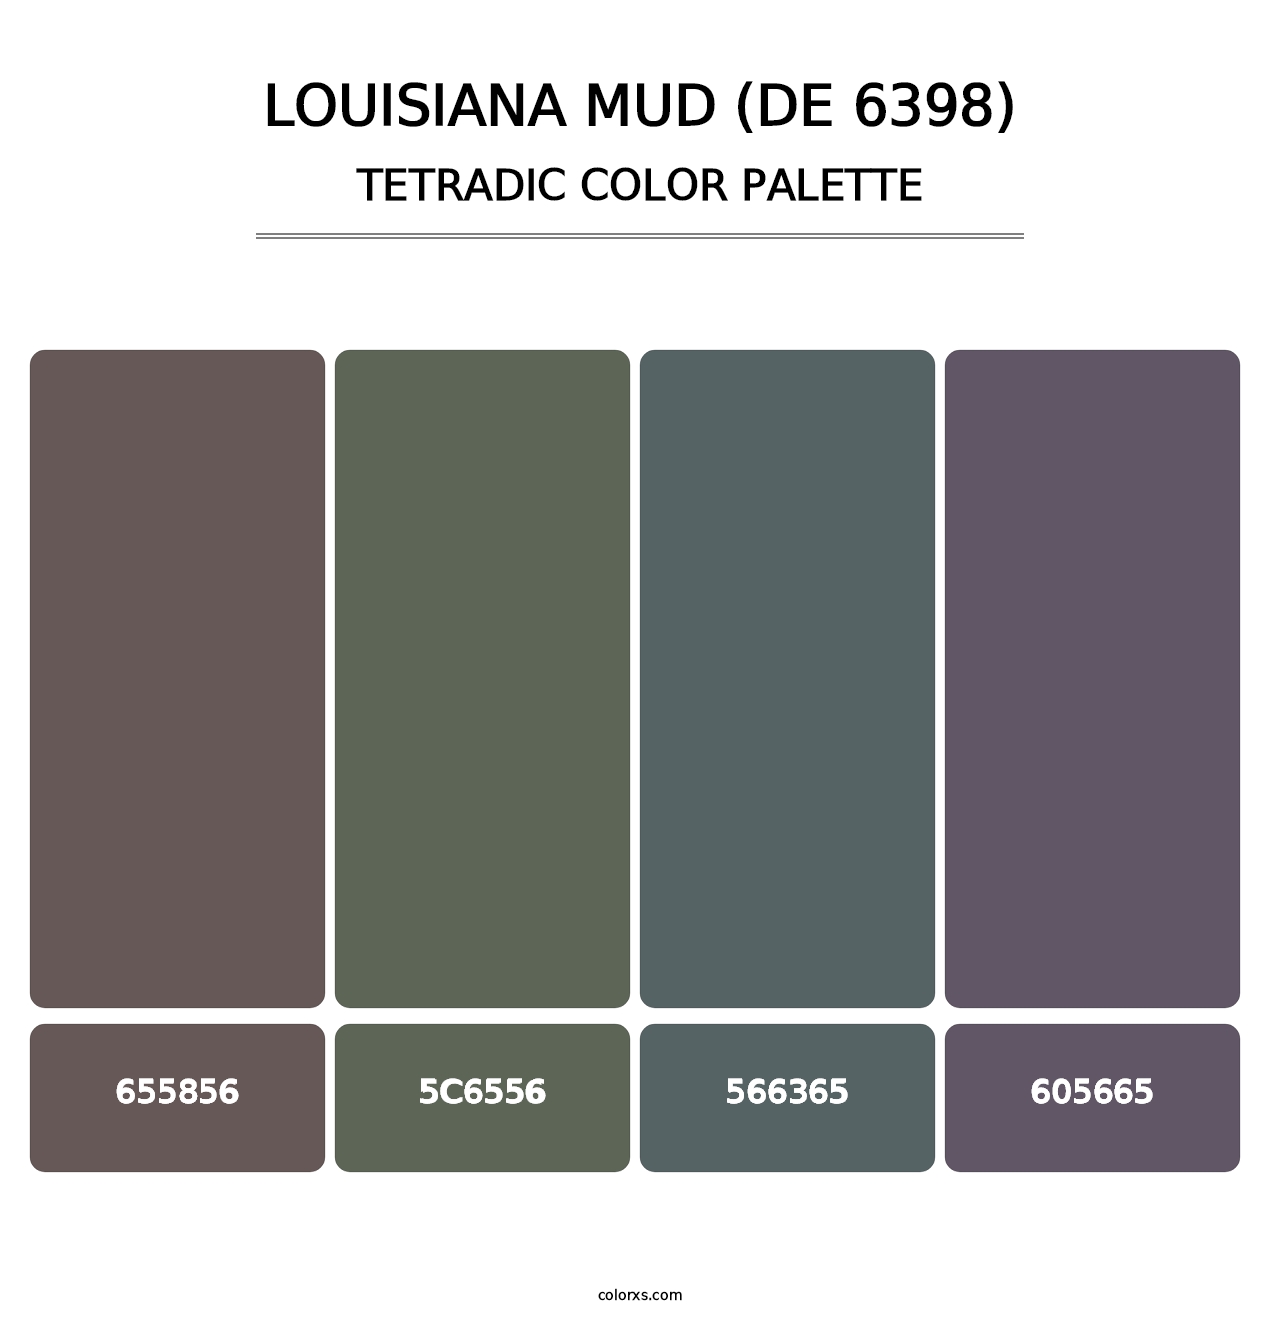 Louisiana Mud (DE 6398) - Tetradic Color Palette